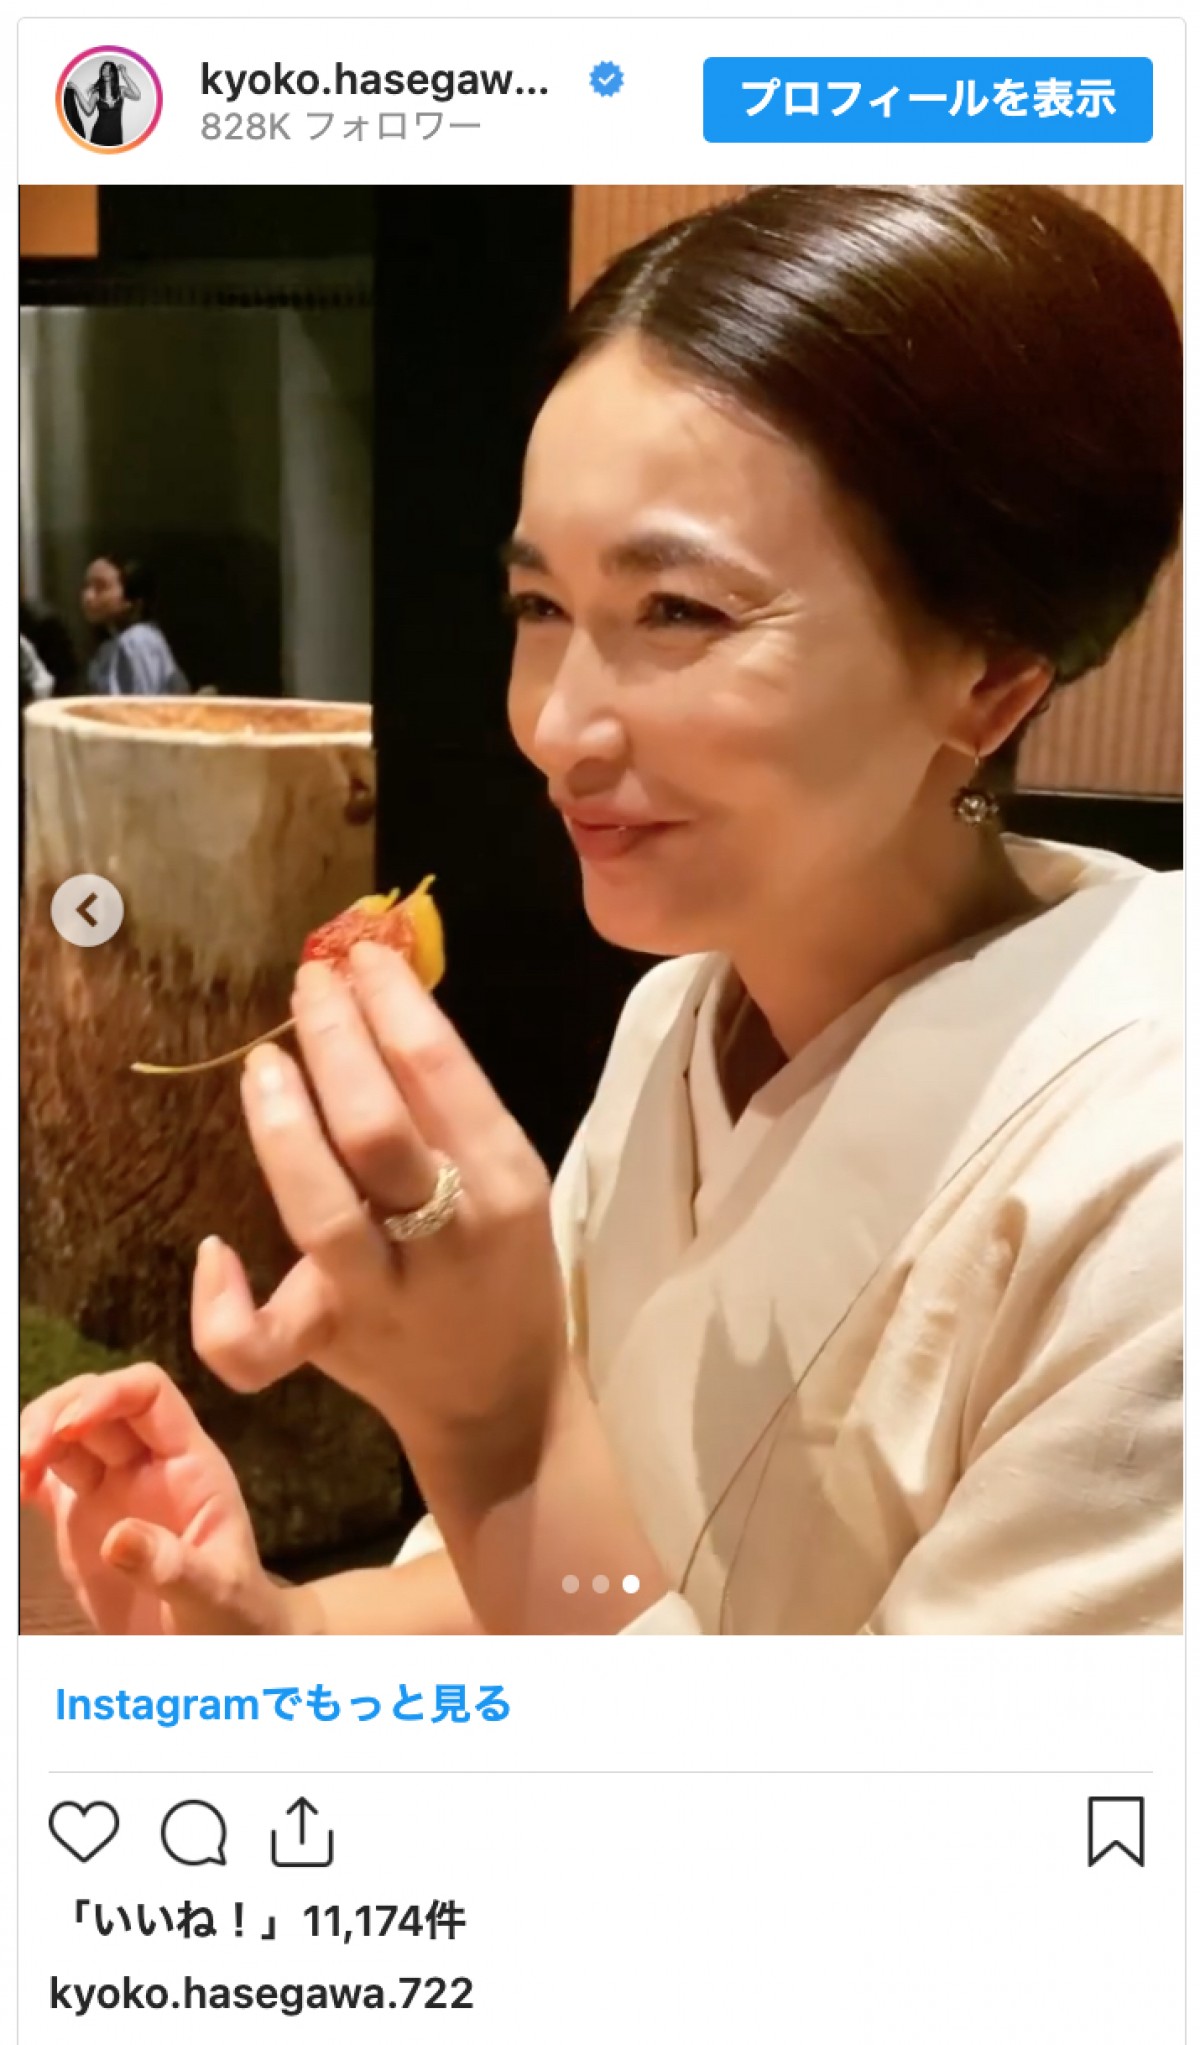 長谷川京子「美しすぎてうっとり」上品な和装ヘアスタイルでの食事姿に反響「見惚れました」